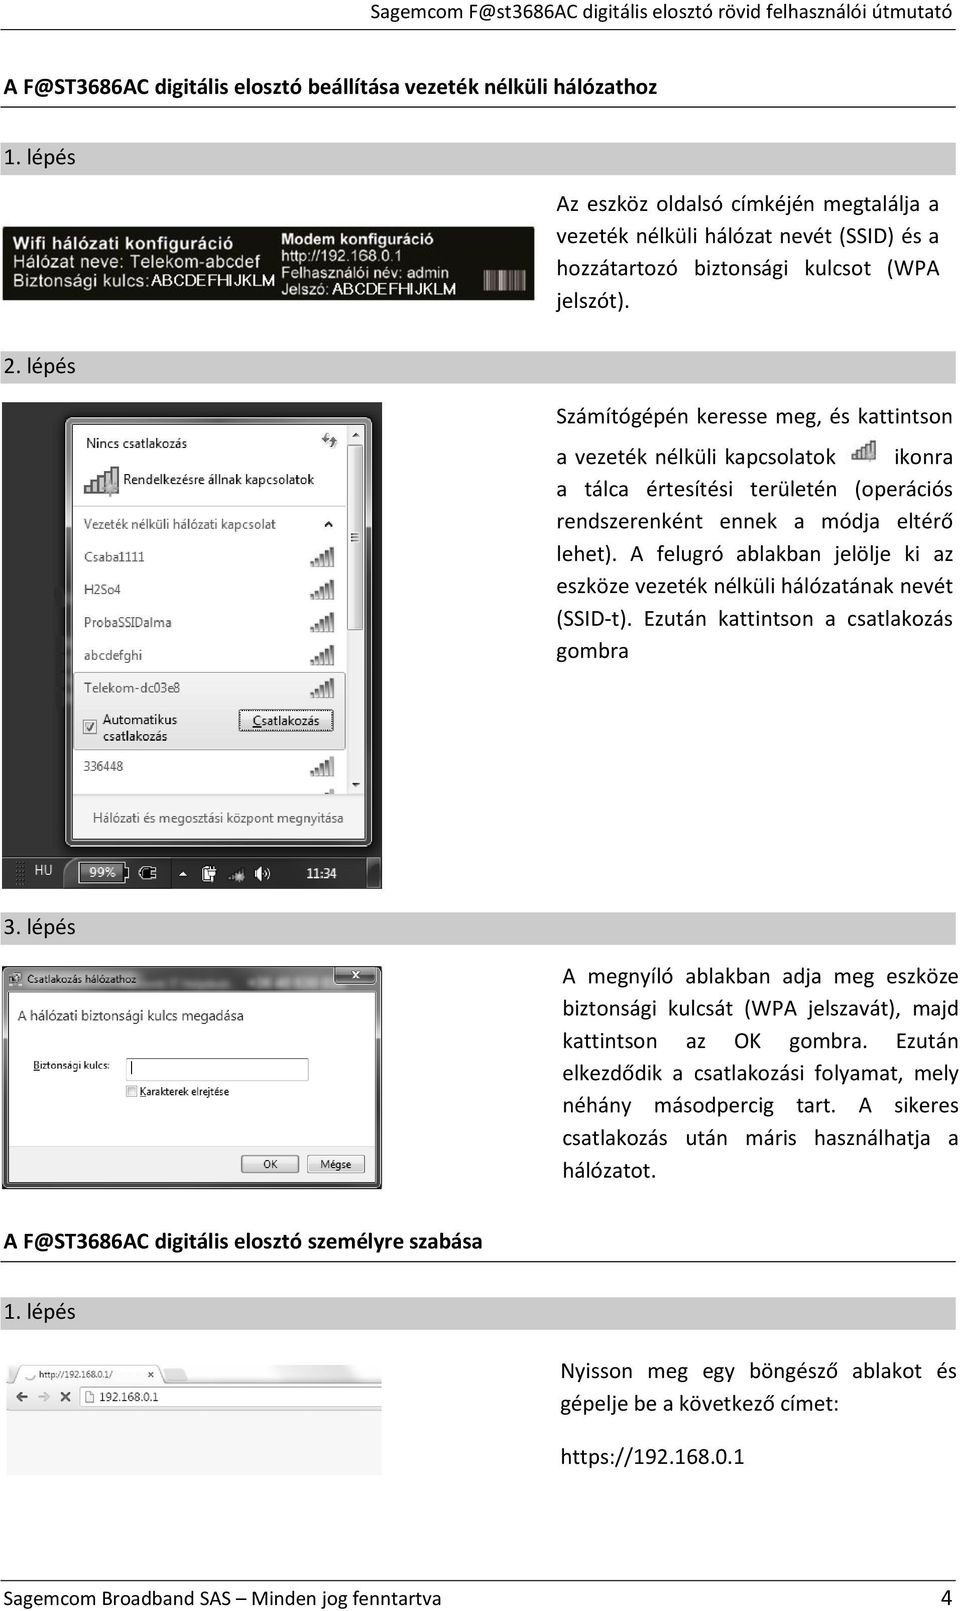 Sagemcom digitális elosztó Rövid felhasználói útmutató - PDF Free Download